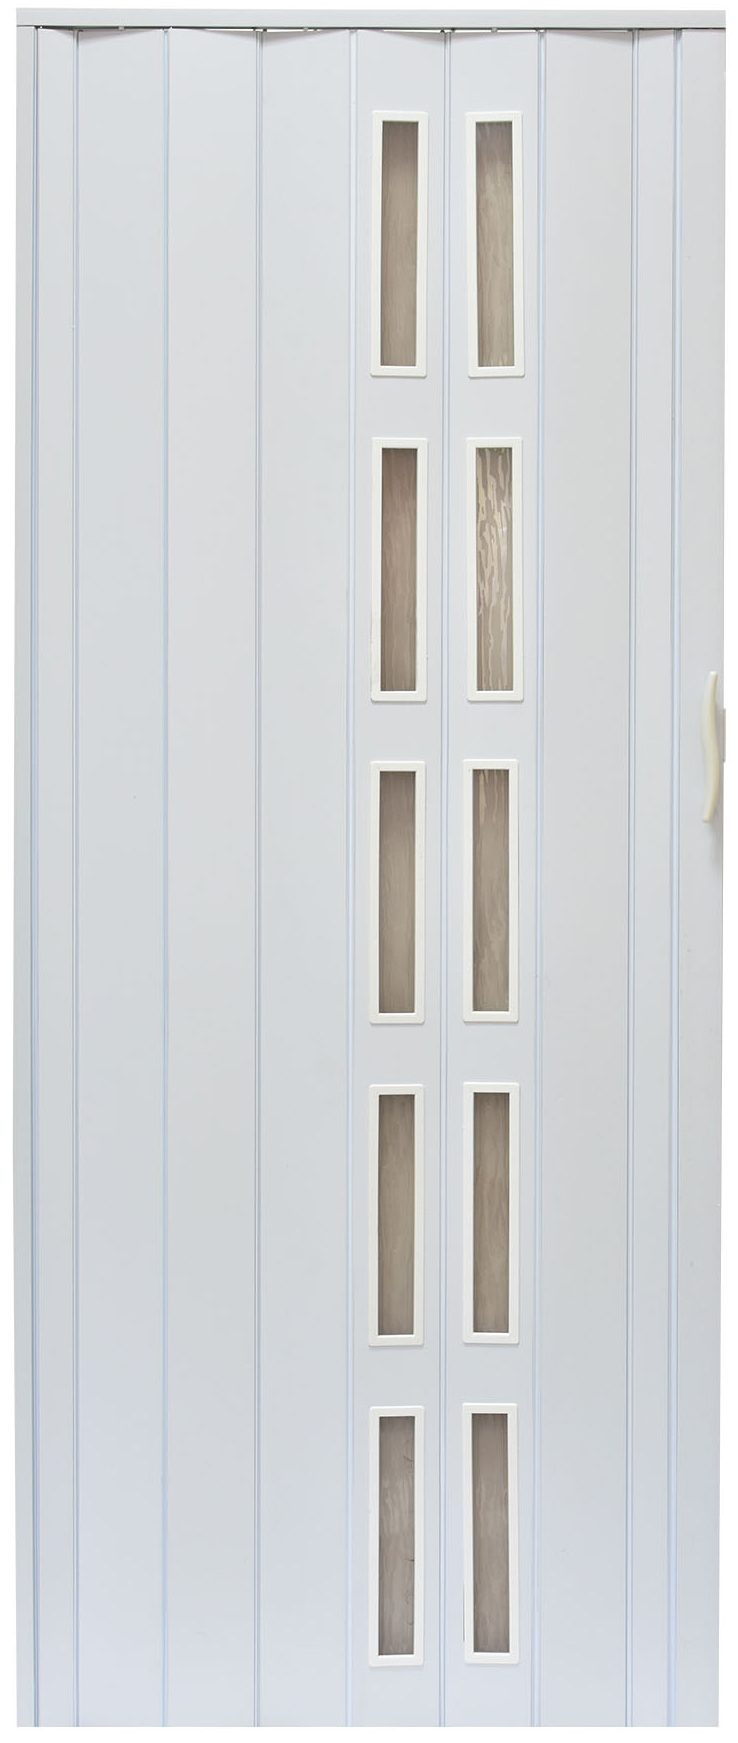 Drzwi harmonijkowe 005S - 90 cm - 014 biały mat